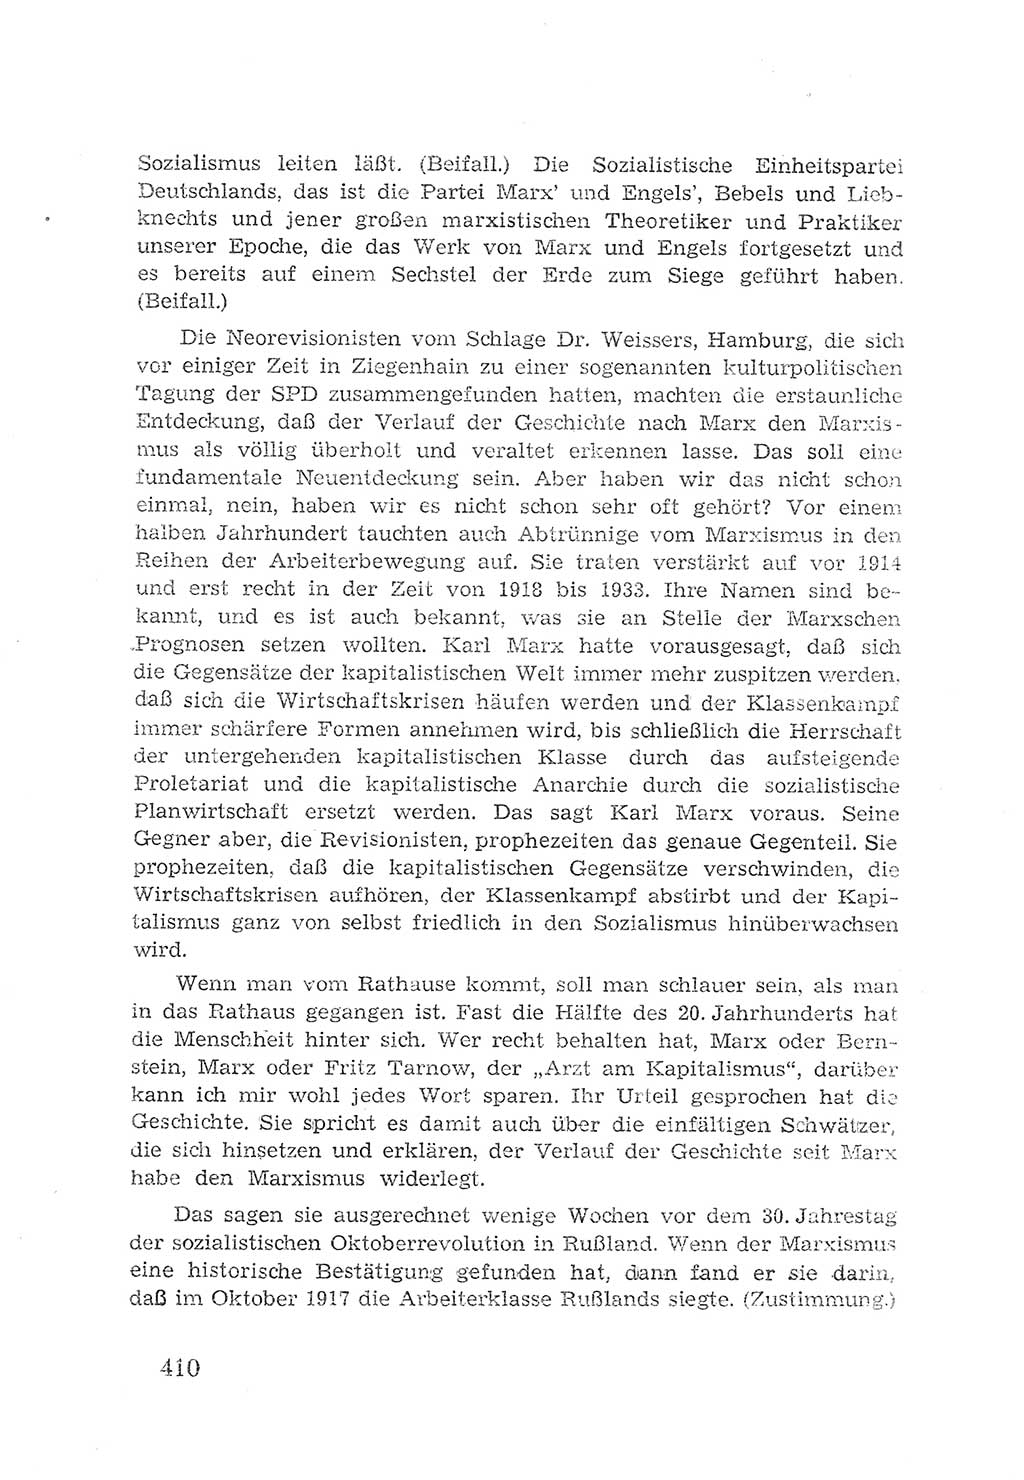 Protokoll der Verhandlungen des 2. Parteitages der Sozialistischen Einheitspartei Deutschlands (SED) [Sowjetische Besatzungszone (SBZ) Deutschlands] 1947, Seite 410 (Prot. Verh. 2. PT SED SBZ Dtl. 1947, S. 410)